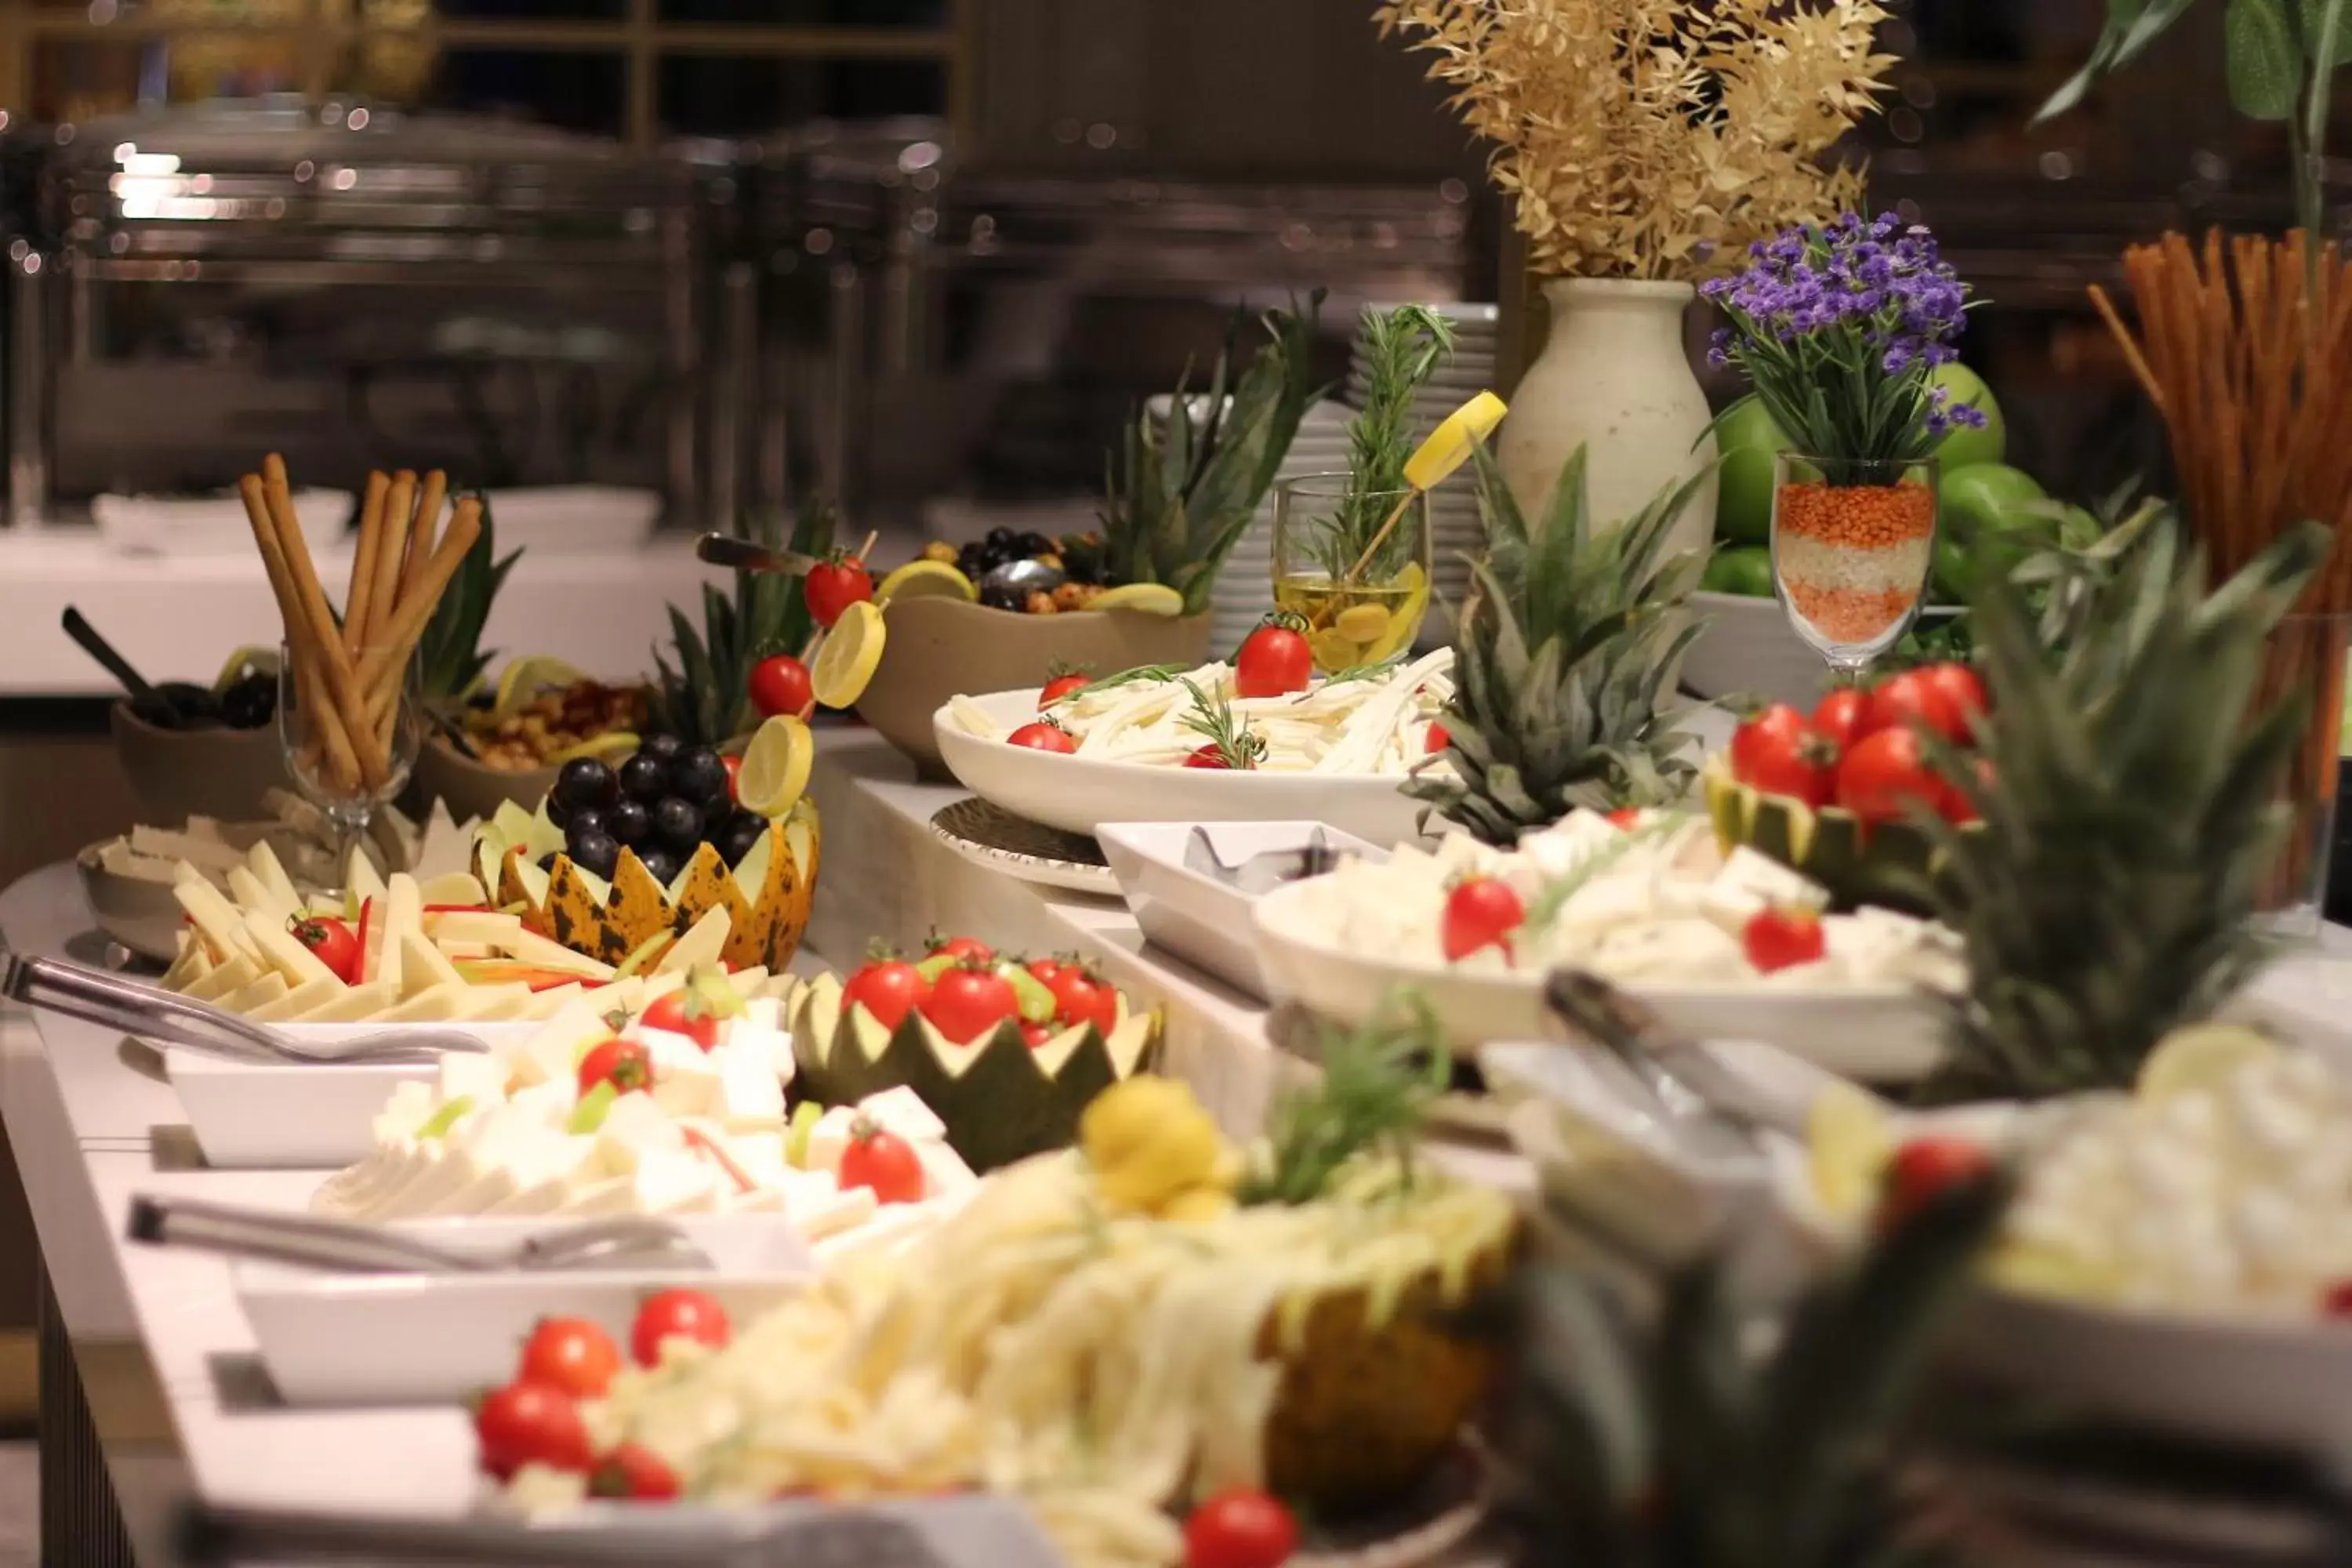 Buffet breakfast in Hotel Zurich Istanbul